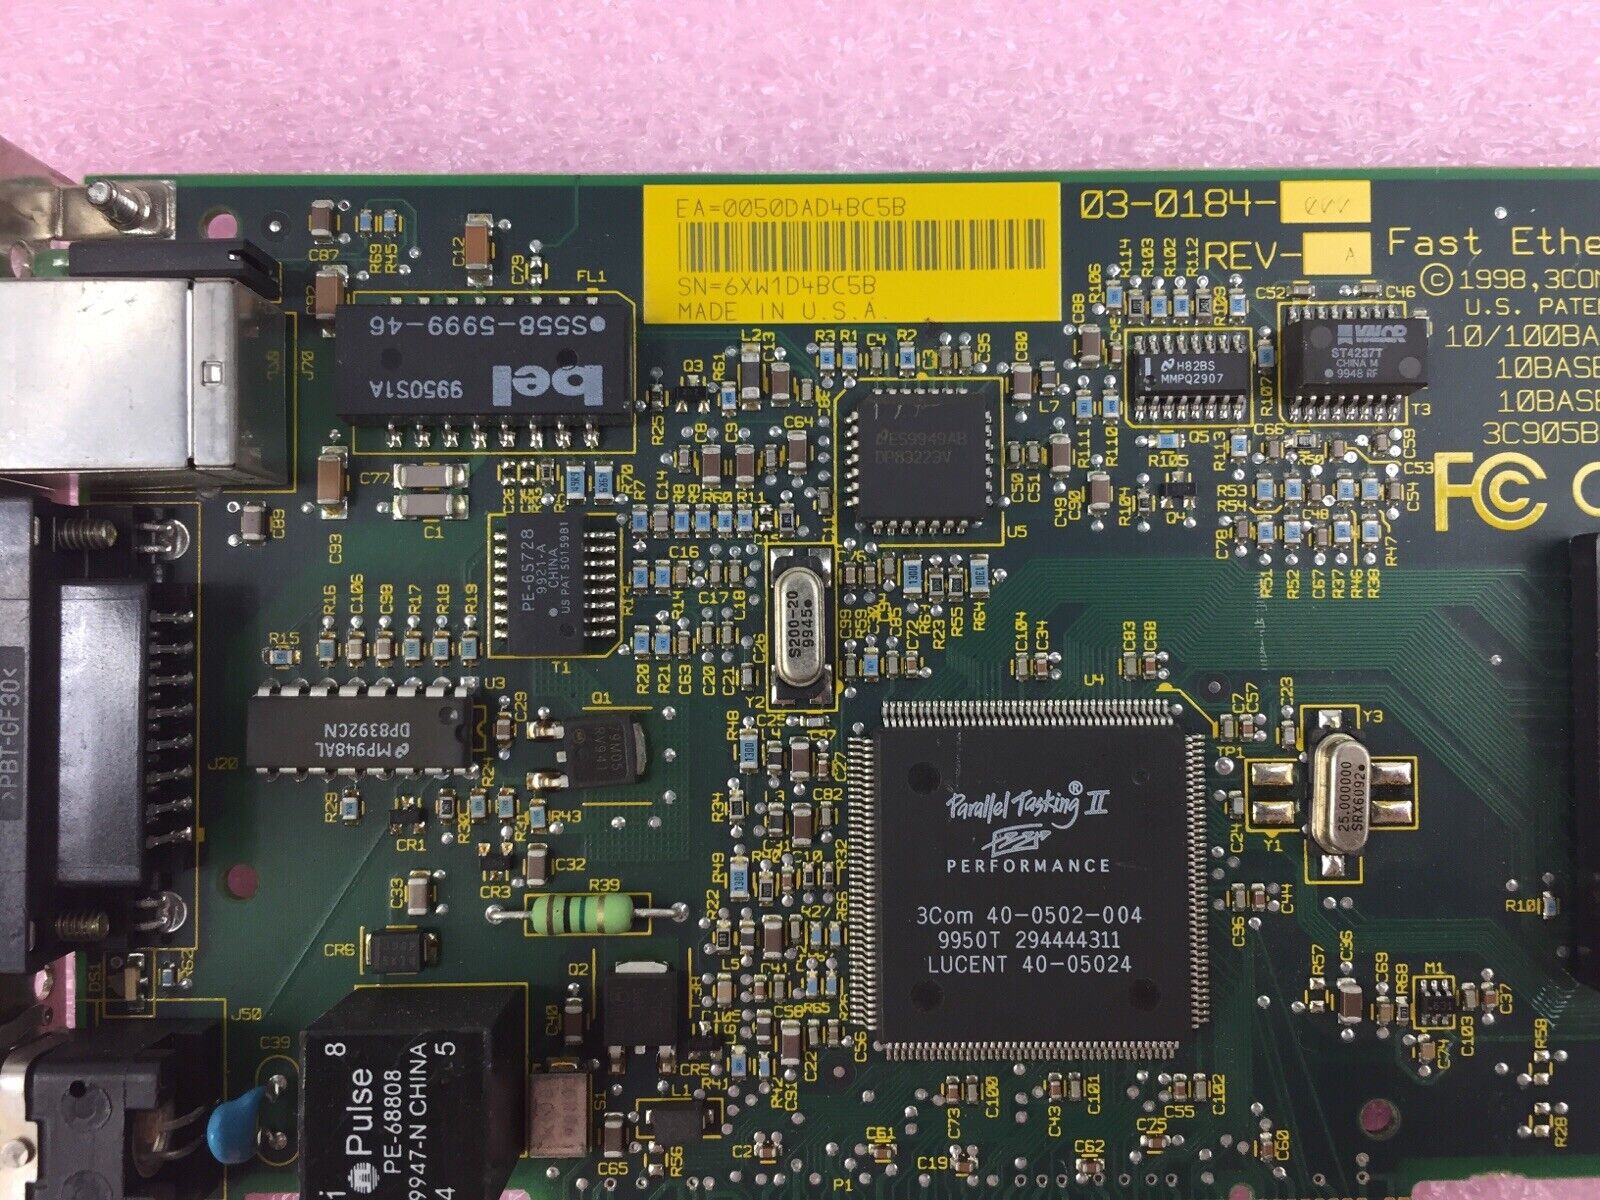 FAST ETHERLINK XL PCI 02-0184-000 REV-03 03-0184-000